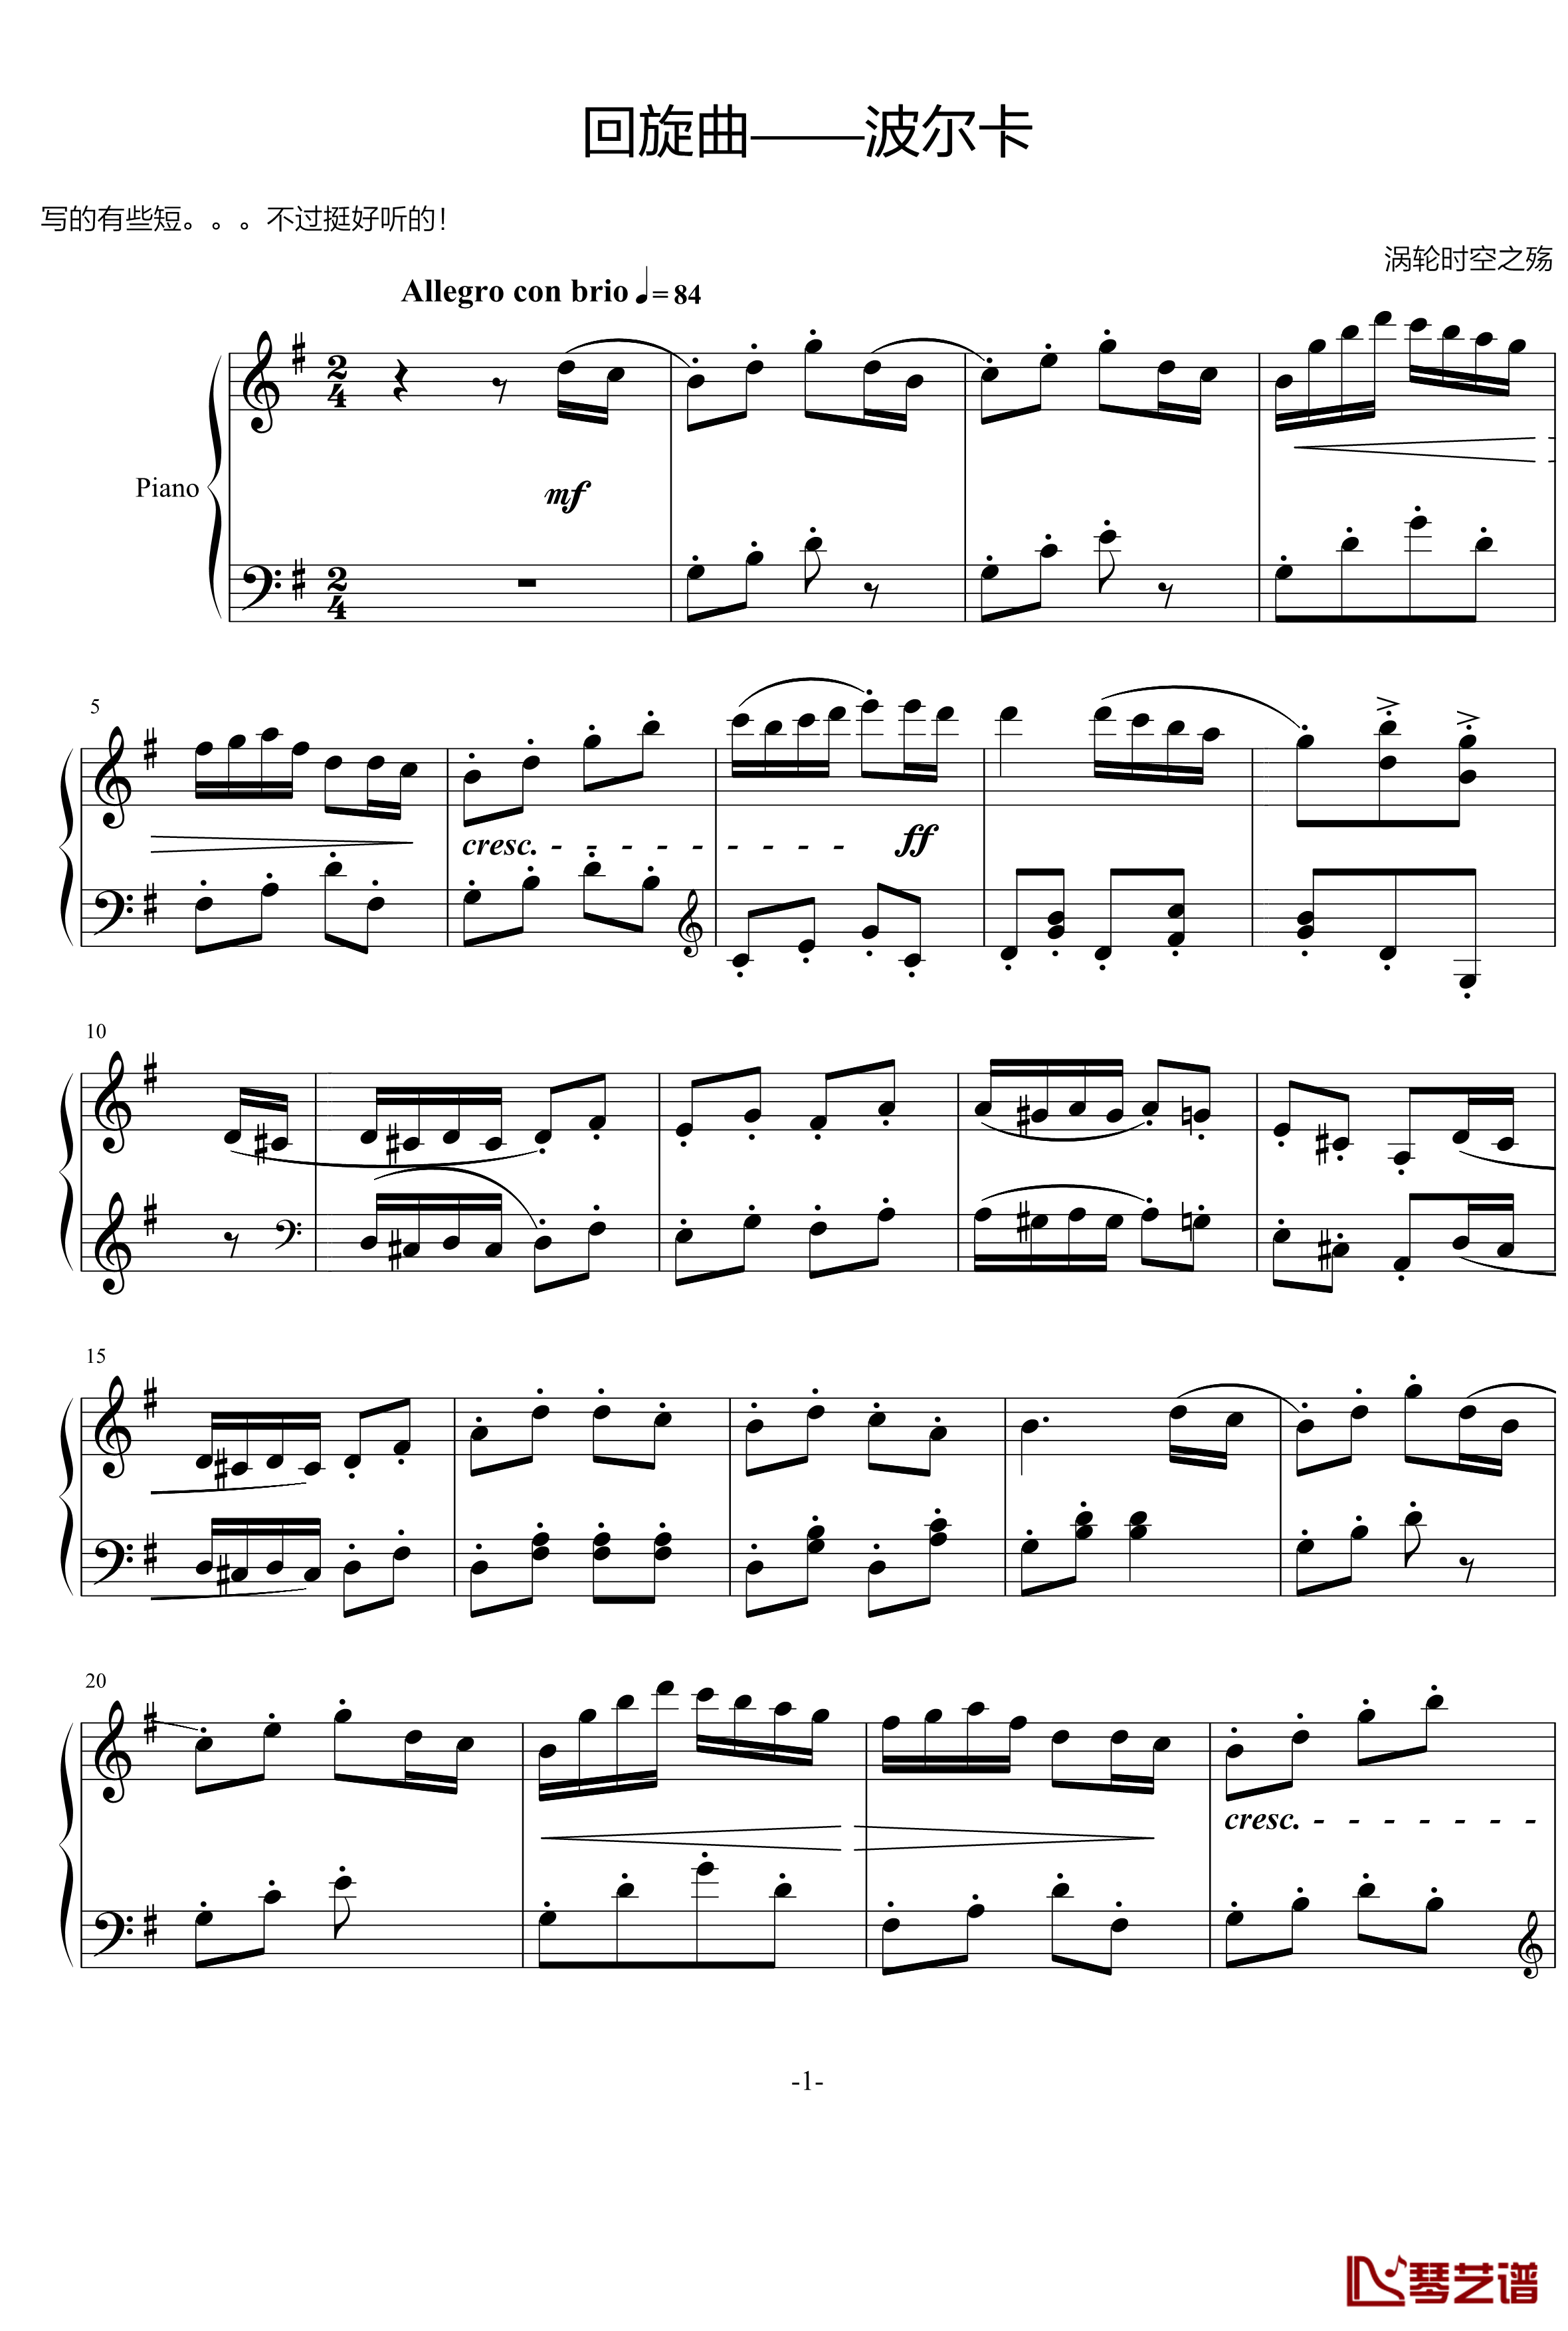 波尔卡钢琴谱-回旋曲-涡轮时空之殇1